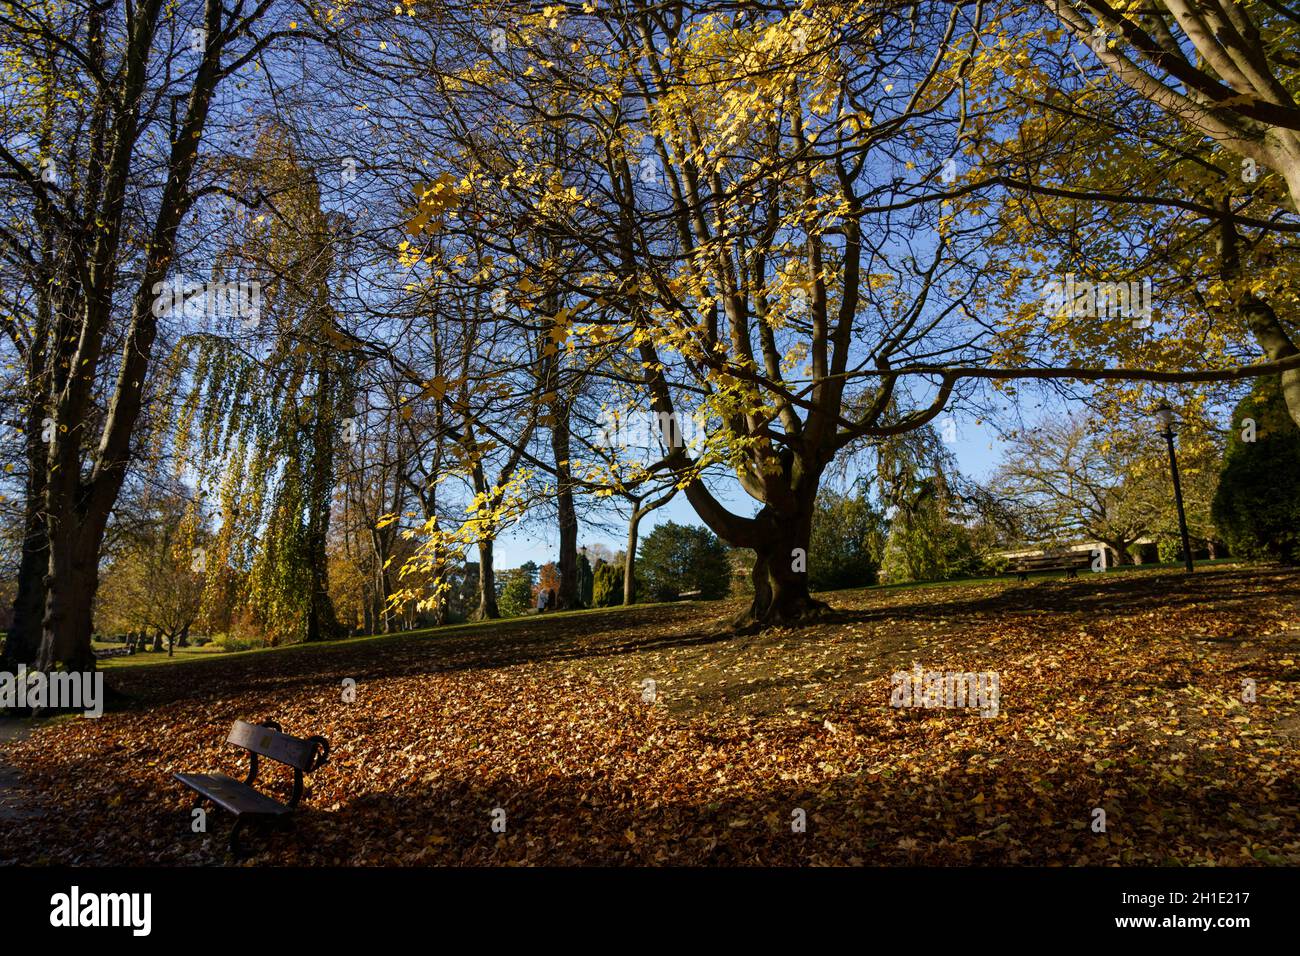 Parksitz aus Holz in Valley Gardens, Harrogate, umgeben von Bäumen, die von Sonnenlicht durchflutet sind, und einem Teppich aus goldenen und gelben Blättern. Stockfoto